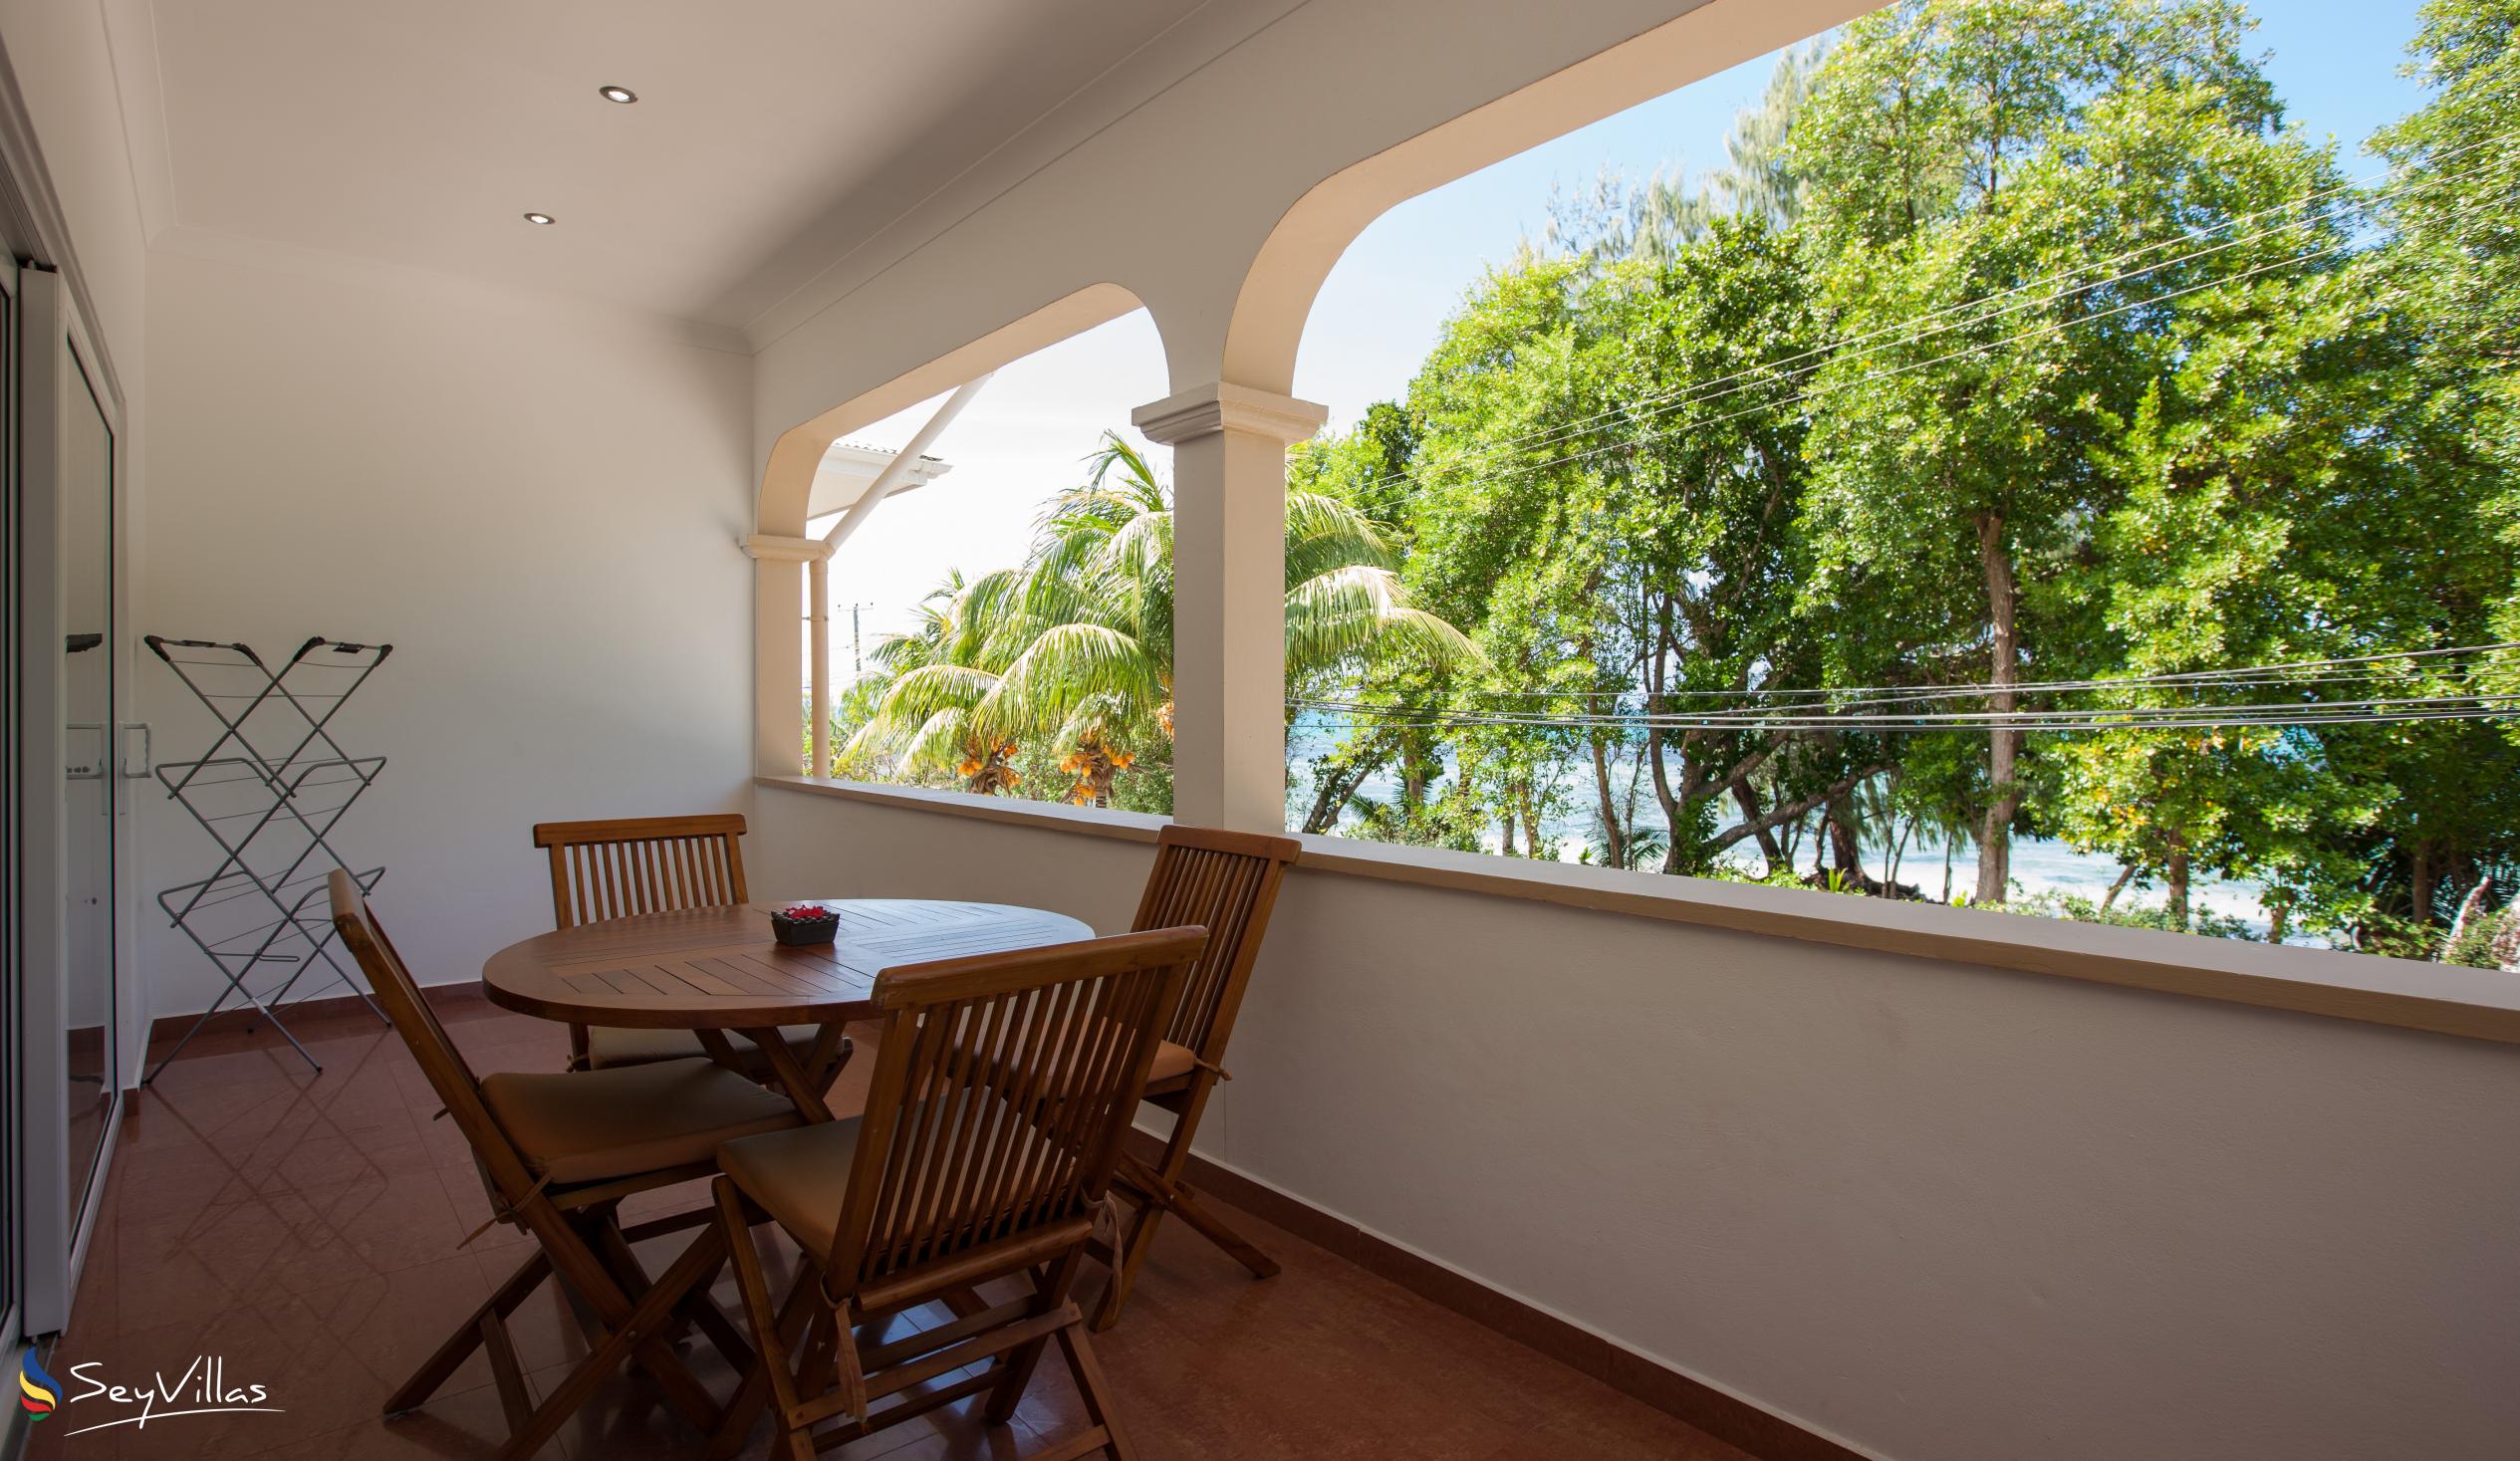 Foto 11: YASAD Luxury Beach Residence - Appartement mit 3 Schlafzimmern - Praslin (Seychellen)